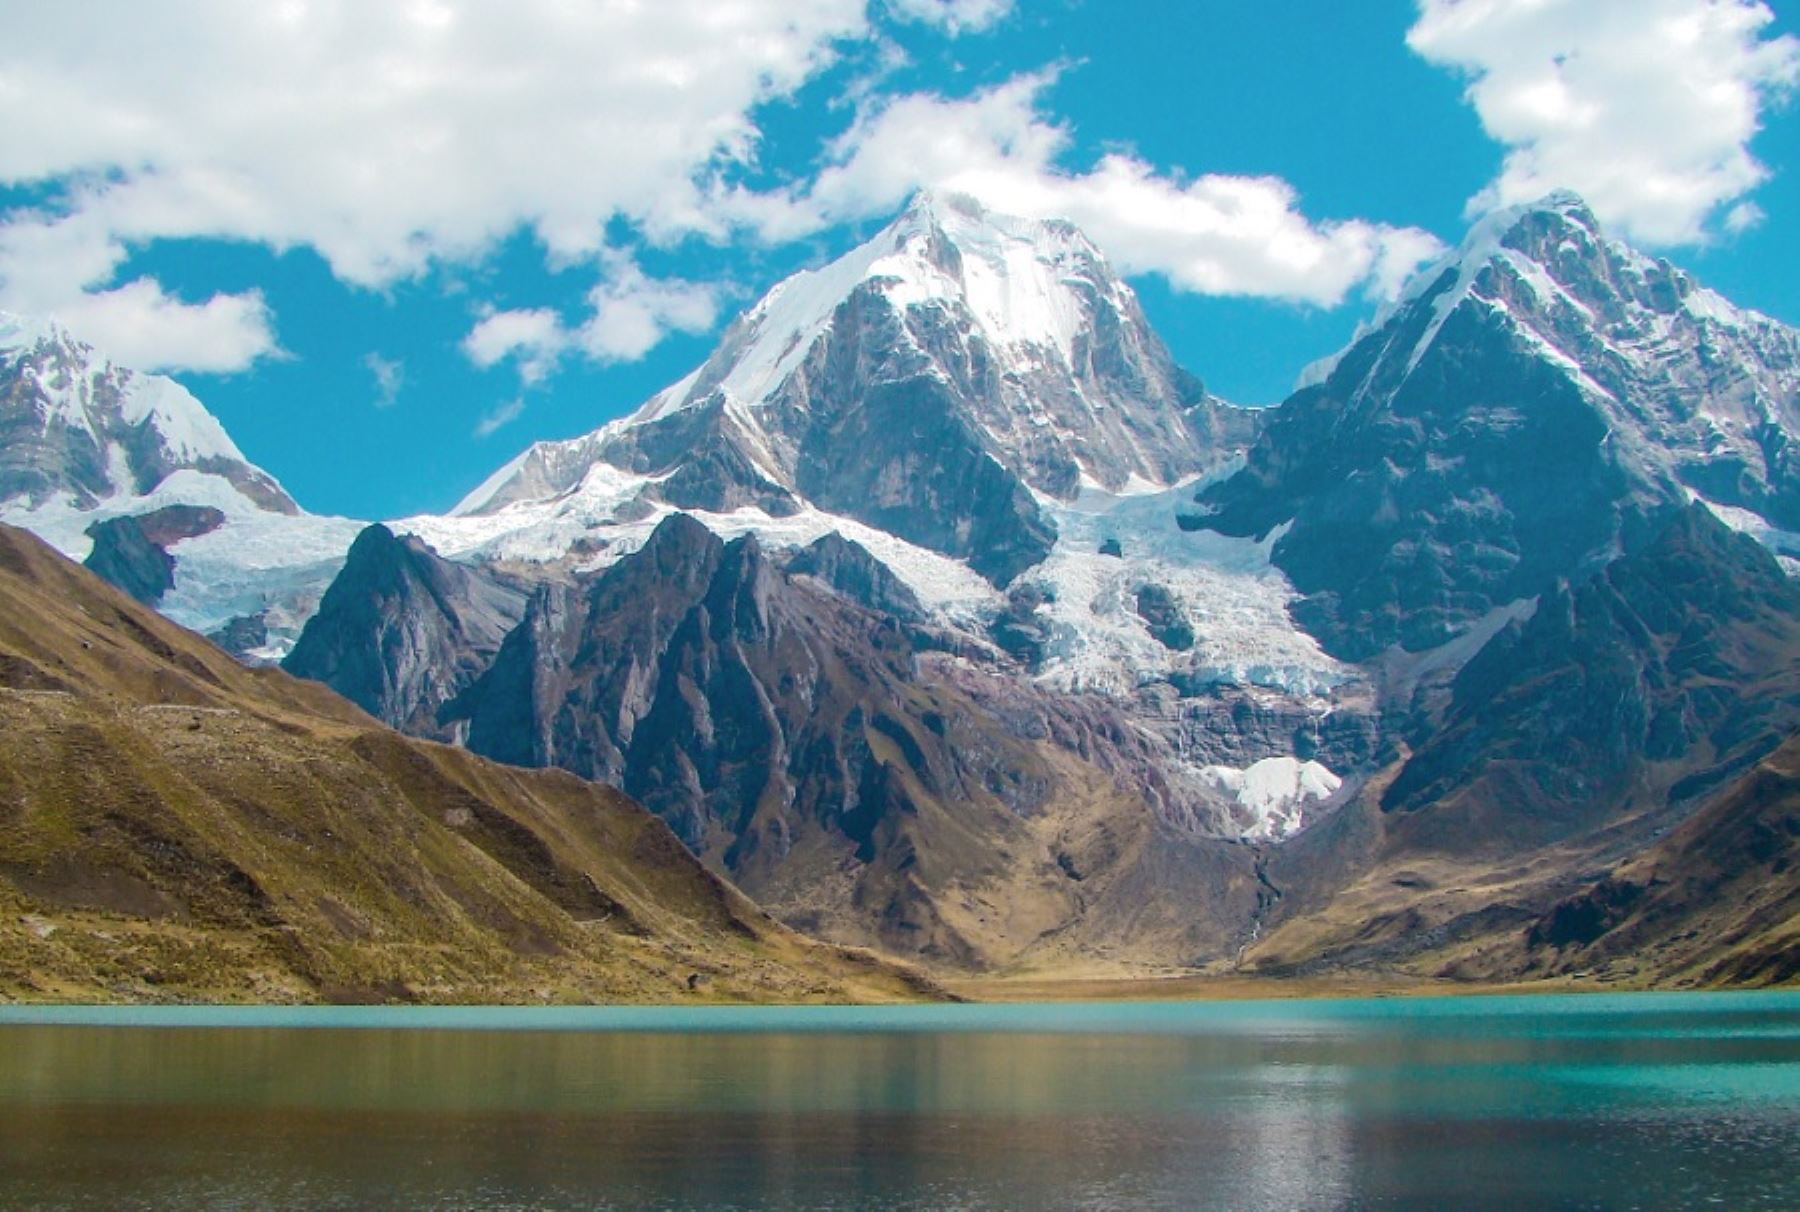 La Cordillera Huayhuash se encuentra ubicada en el límite de las regiones de Huánuco y Áncash, estando conformado por distintos nevados de tipo alpino o himalayo. Las cimas más importantes y difíciles son Siula (6,536 m.s.n.m.), Sarapo (6,143 m.s.n.m.) y Randoy (5,883 m.s.n.m.).